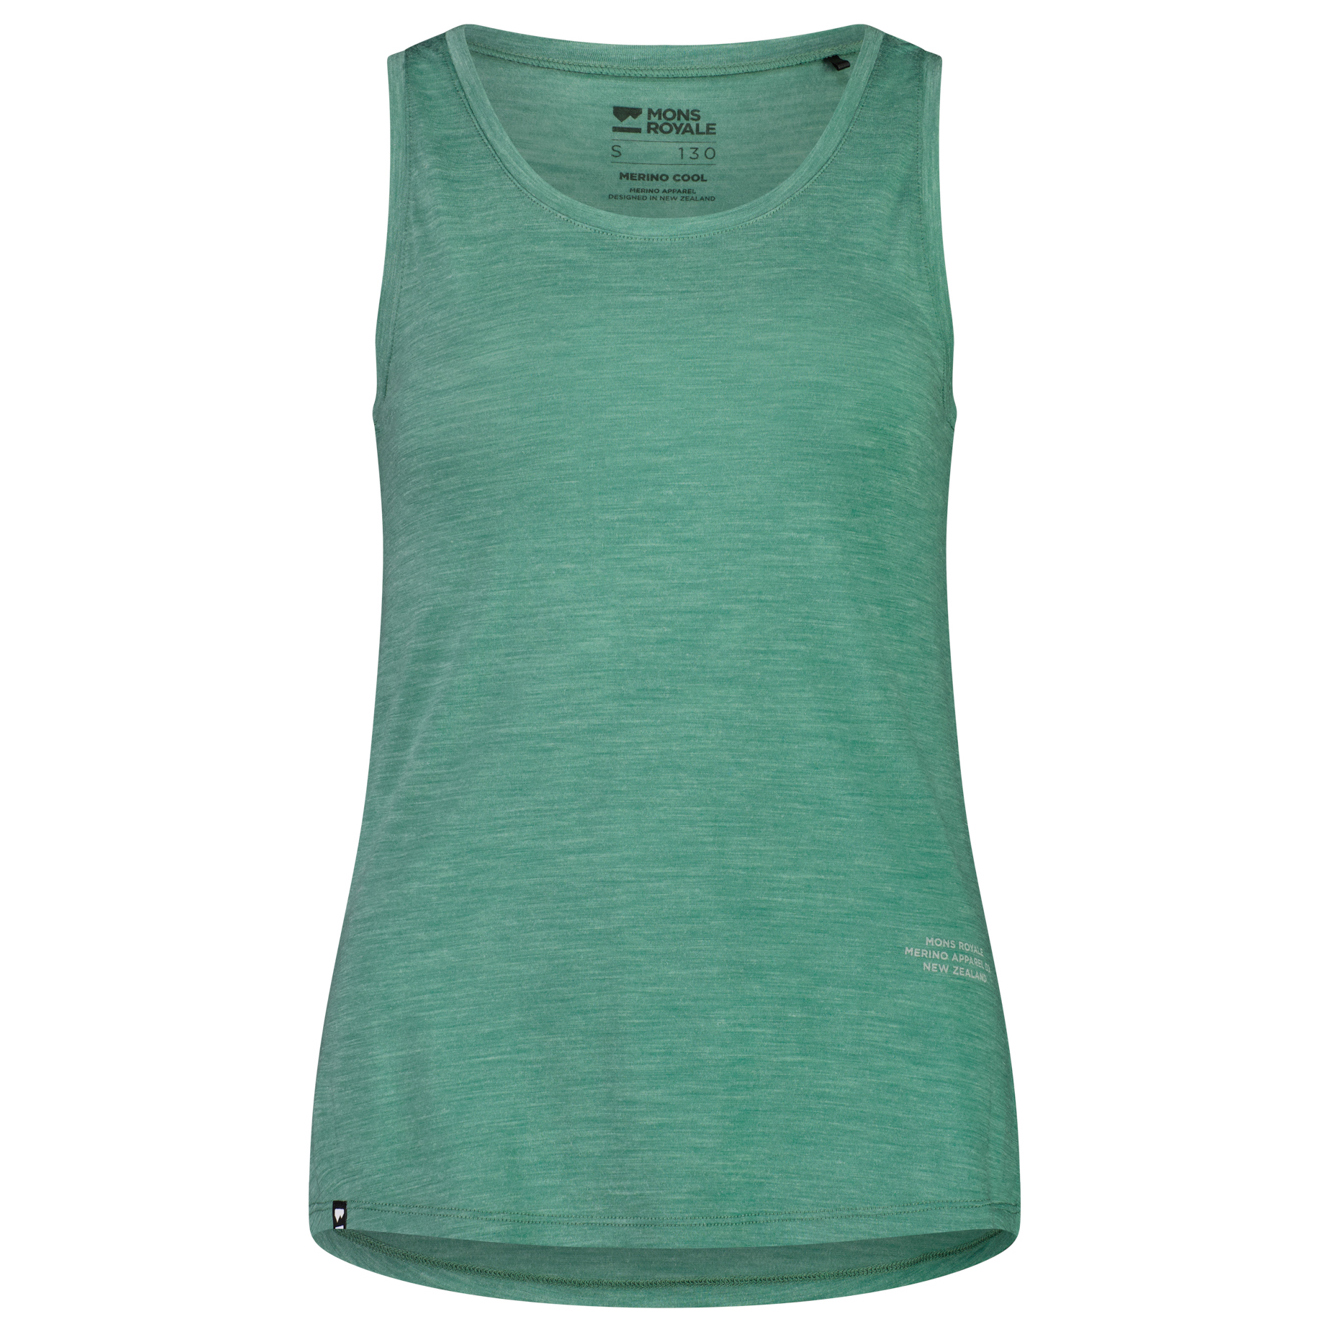 Рубашка из мериноса Mons Royale Women's Zephyr Merino Cool Tank, цвет Smokey Green